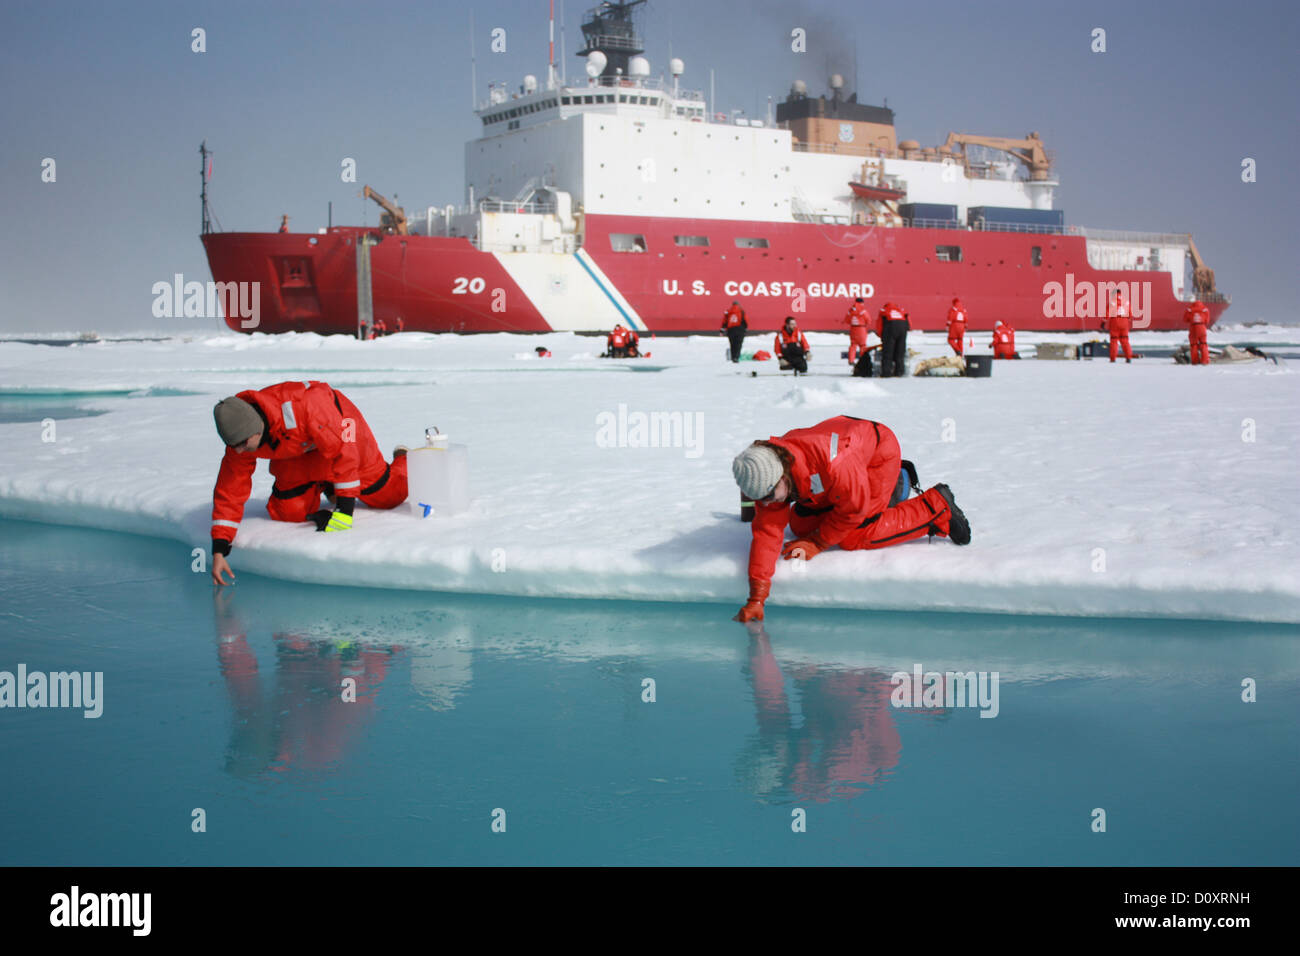 Garde-côte Healy stationné dans la banquise au cours de la recherche sur l'évolution des conditions dans l'Arctique le 6 juillet 2011 dans la mer de Chukchi. Banque D'Images